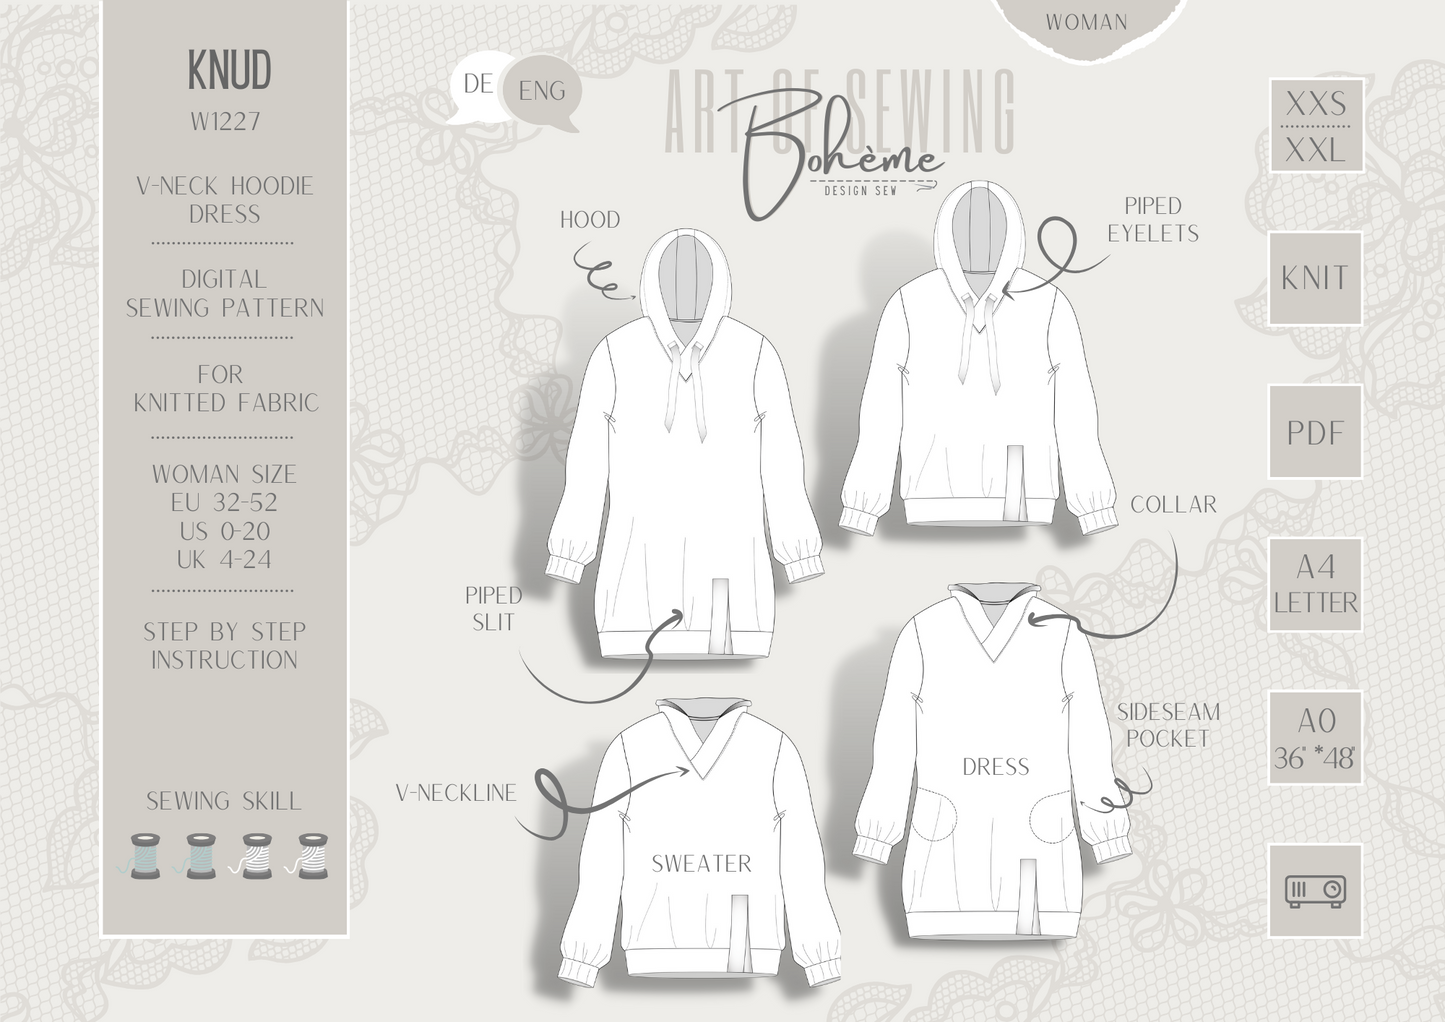 Hoodie-Dress | Knud W1227 | Woman XXS - XXL | Digital Sewing Pattern | PDF | Projector | Bohème